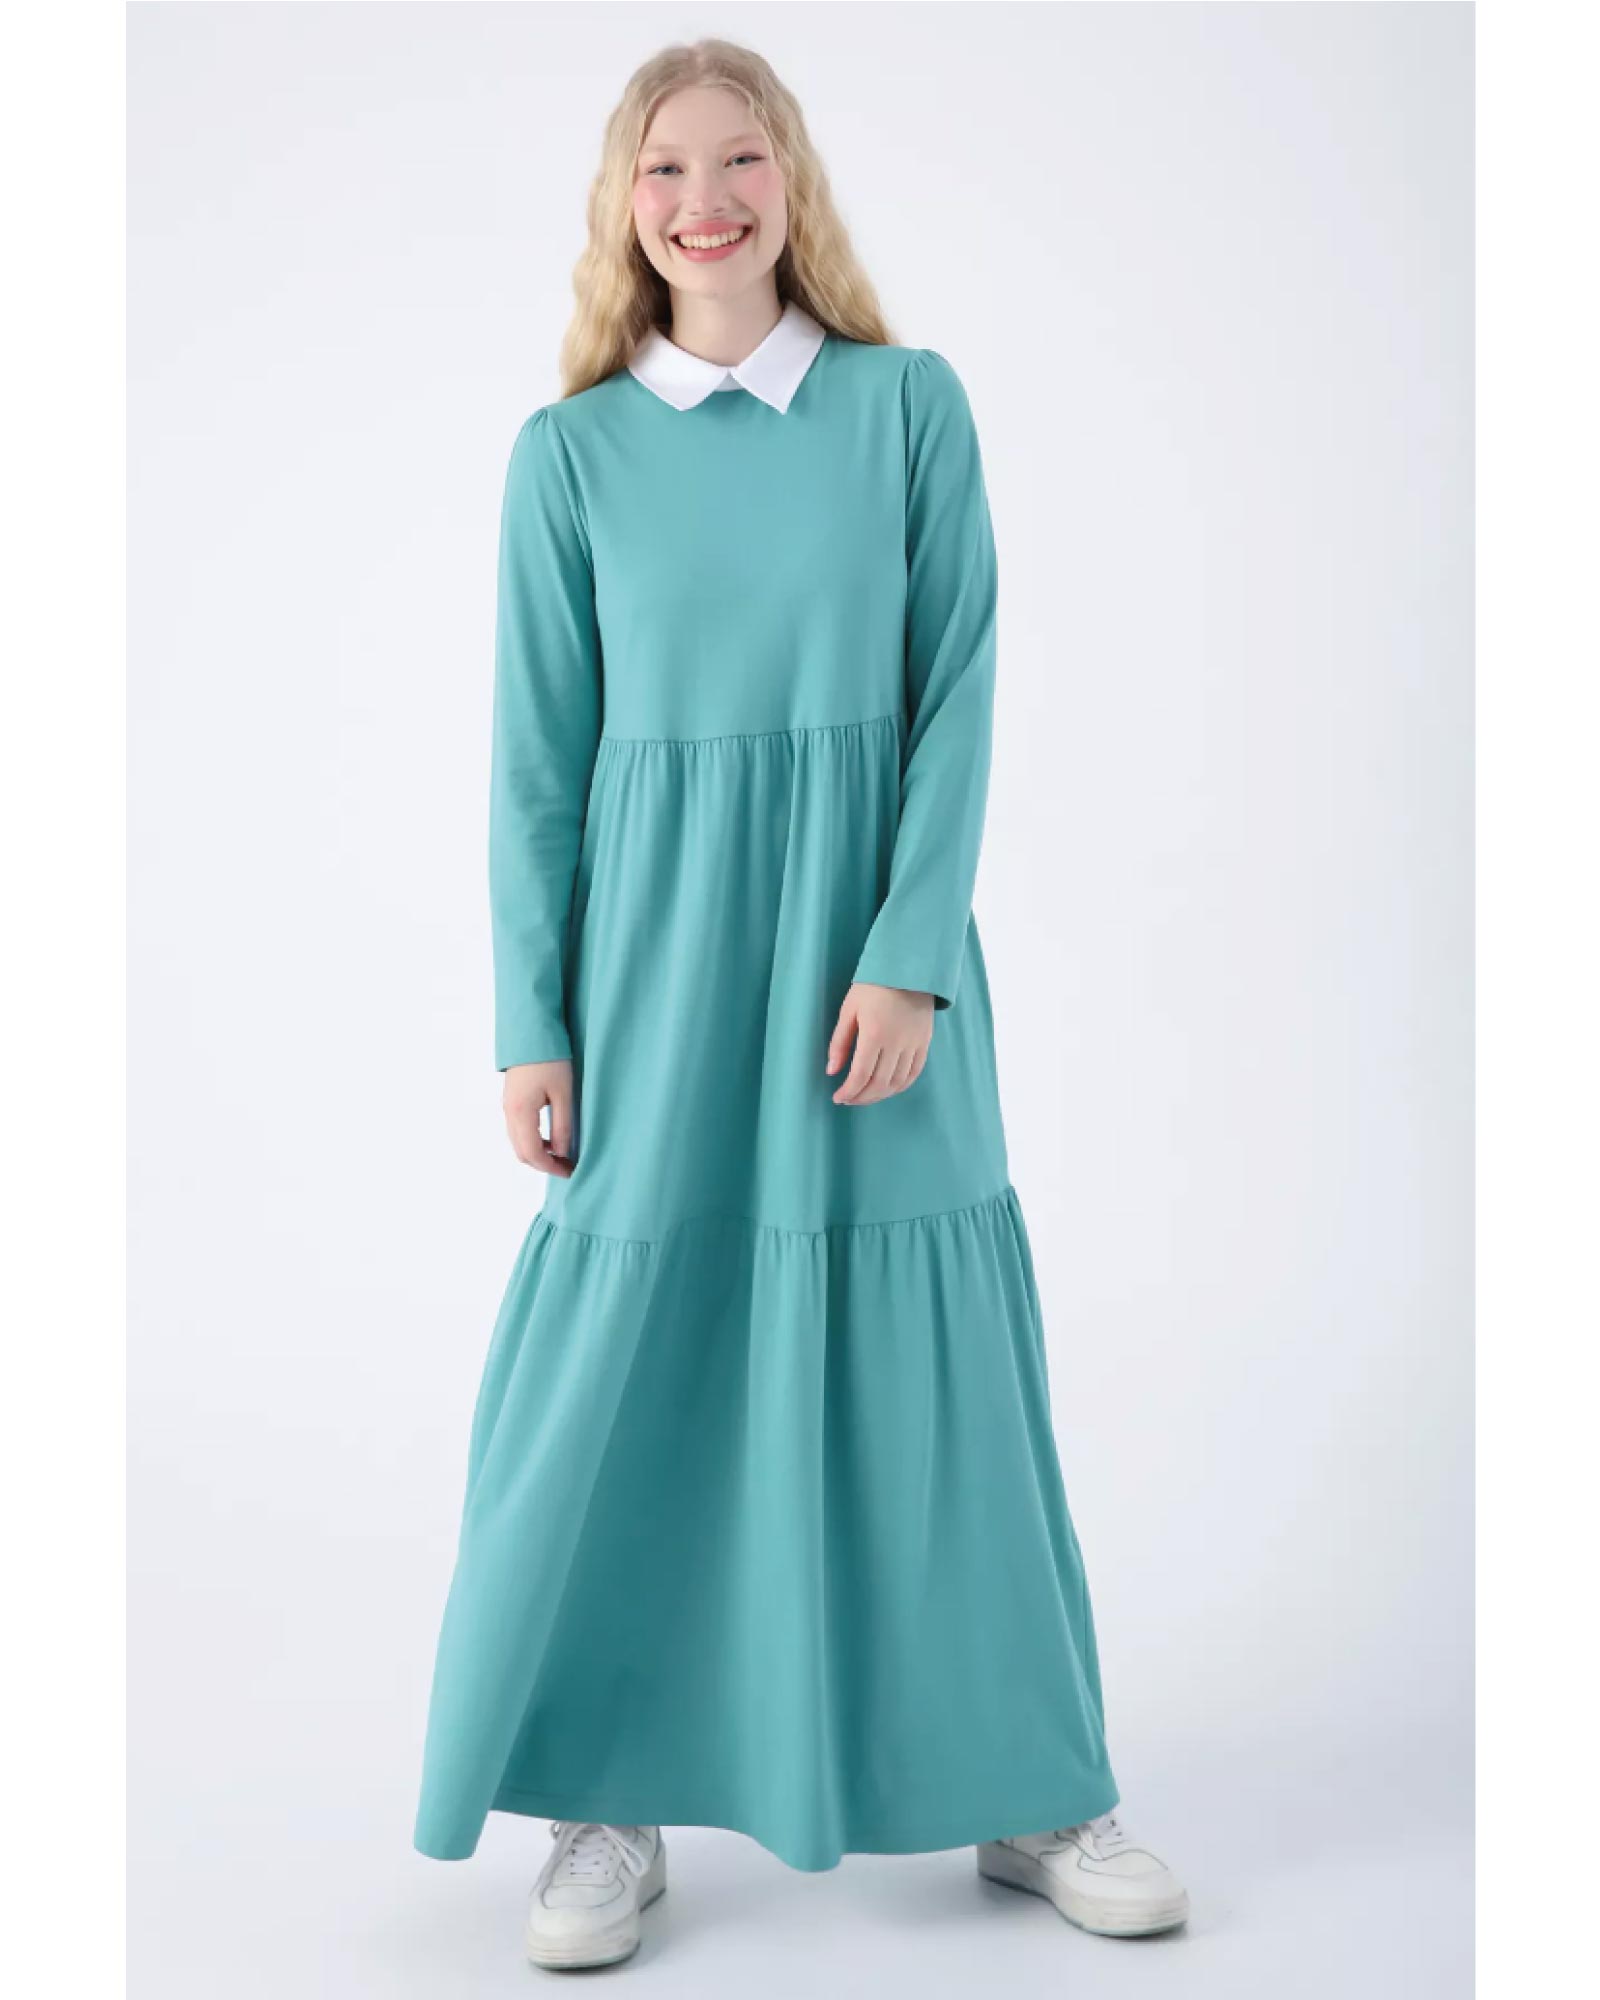 Hijab-Kleid Baumwollkleid mit klassischem Hemdkragen, praktischen Taschen und charmanten Rüschen